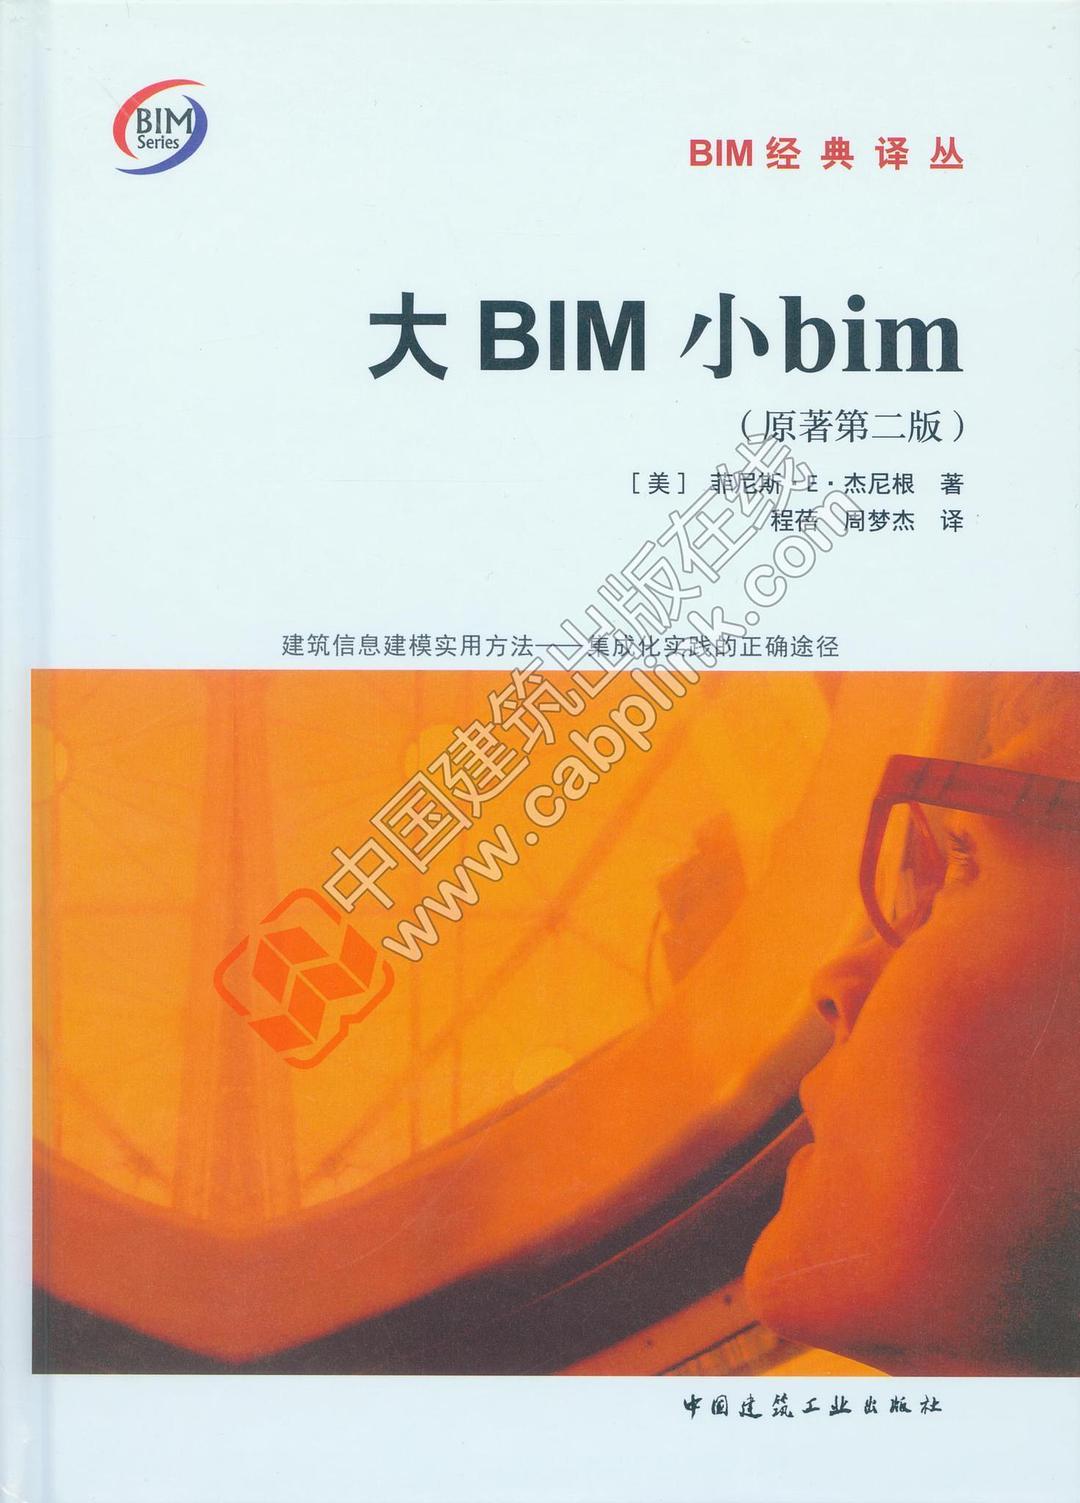 大BIM小bim 建筑信息建模实用方法——集成化实践的正确途径